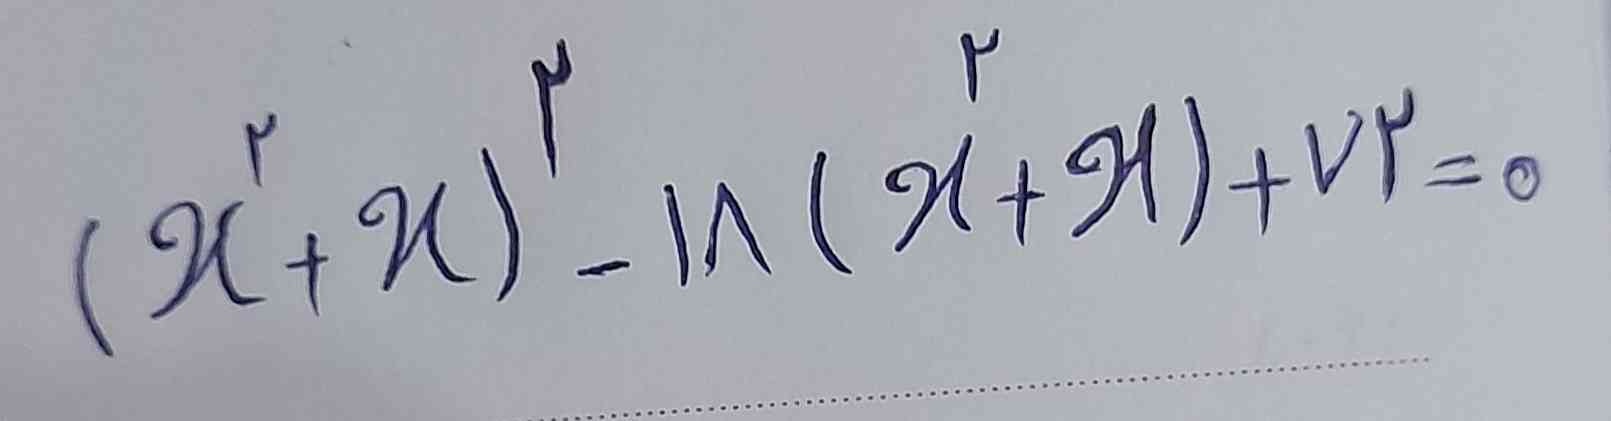  این معادله به روش تجزیه چگونه حل میشود؟